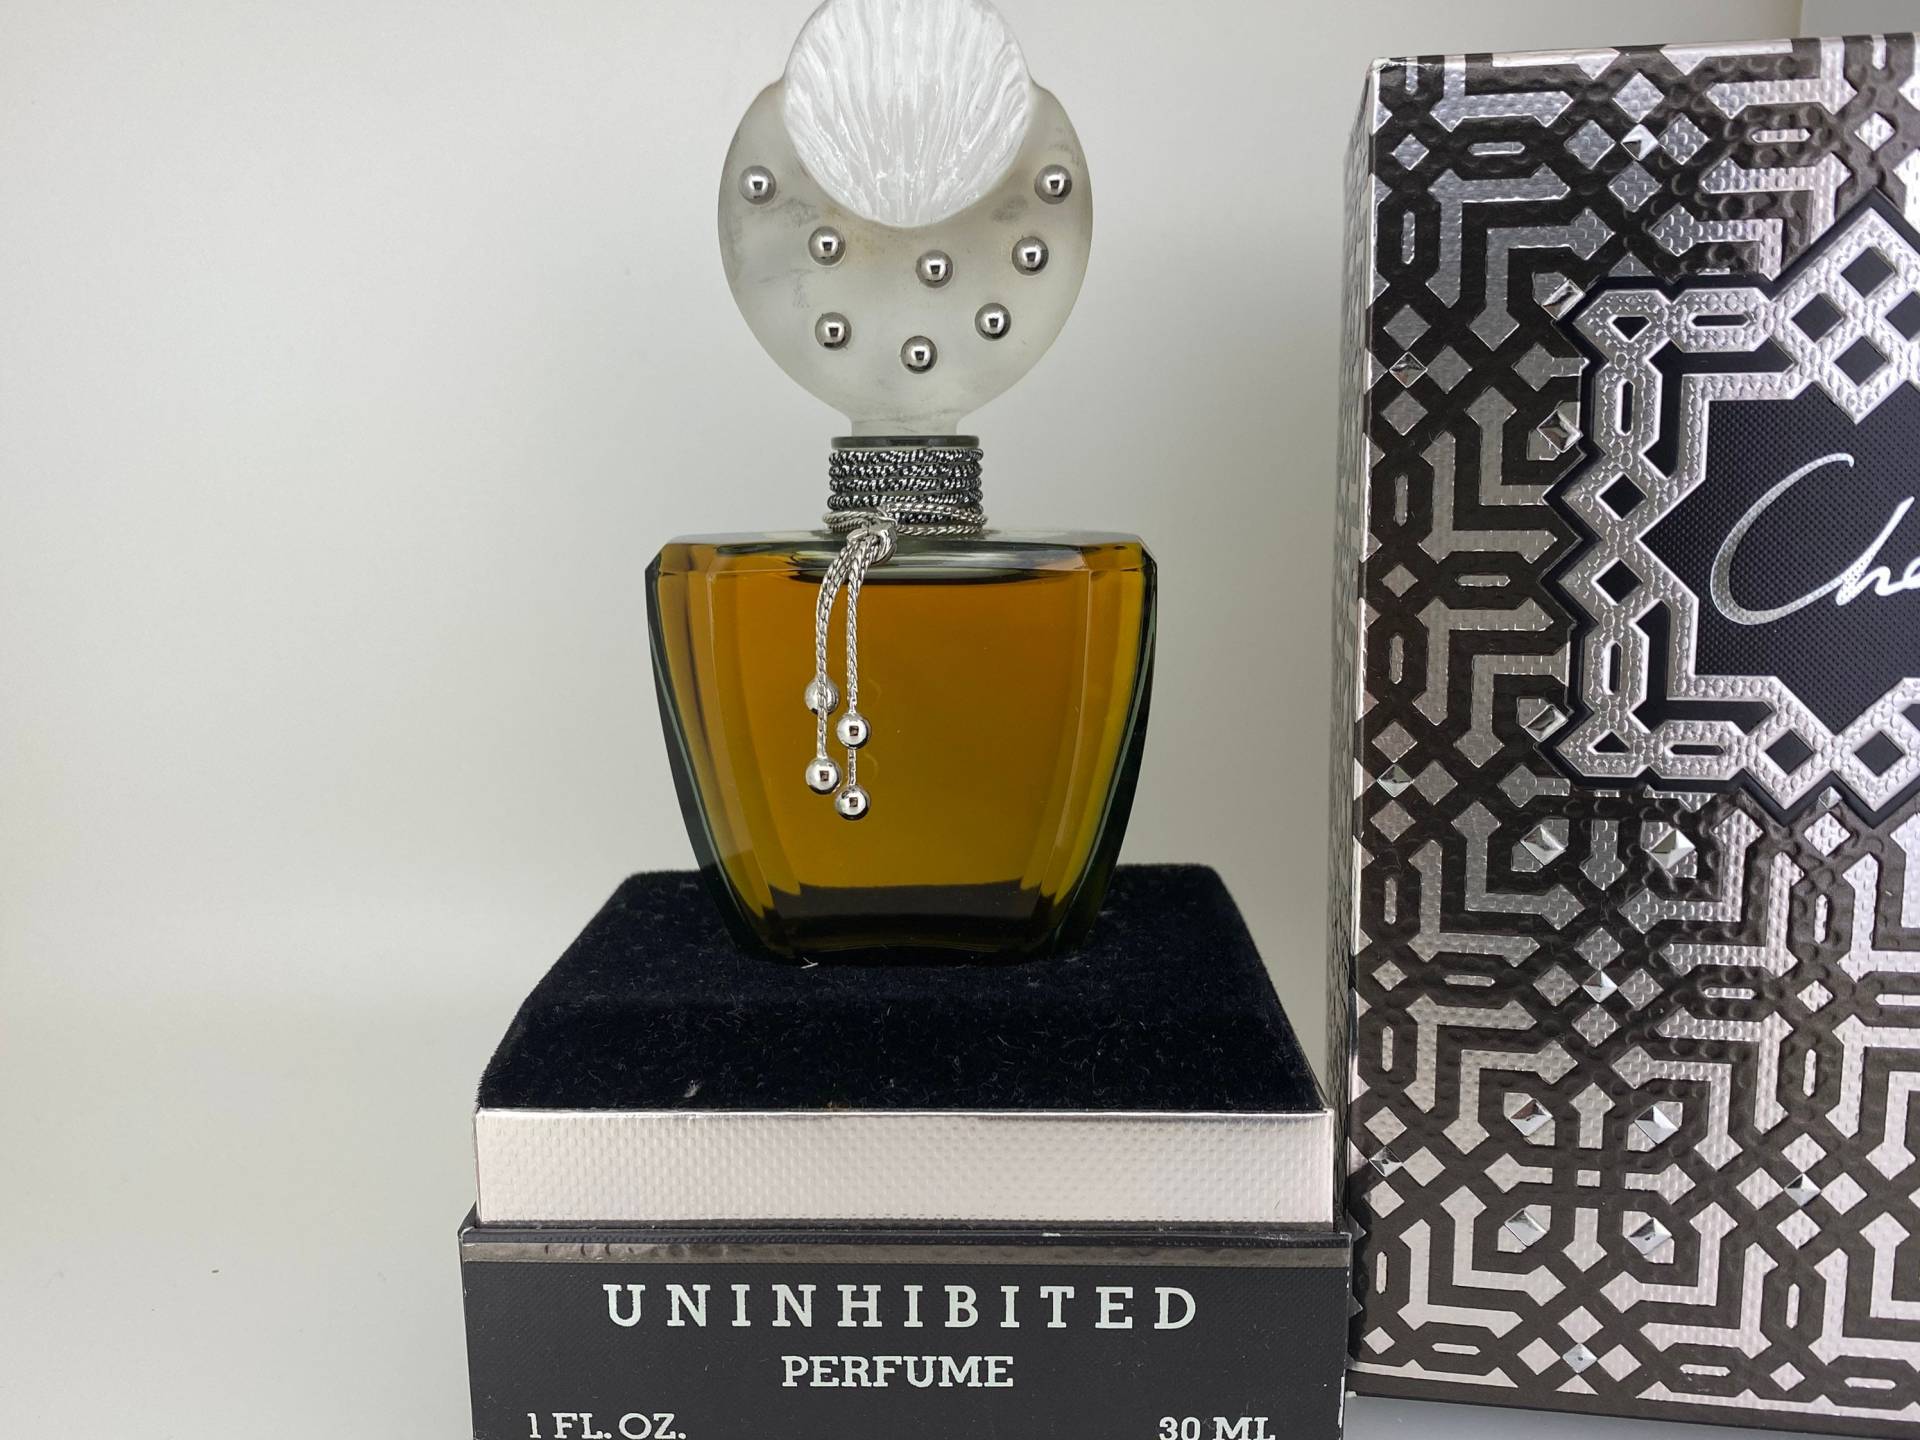 Uninhibited Cher | 1987 Parfum Extrait 30 Ml Selten von VintagePerfumeShop